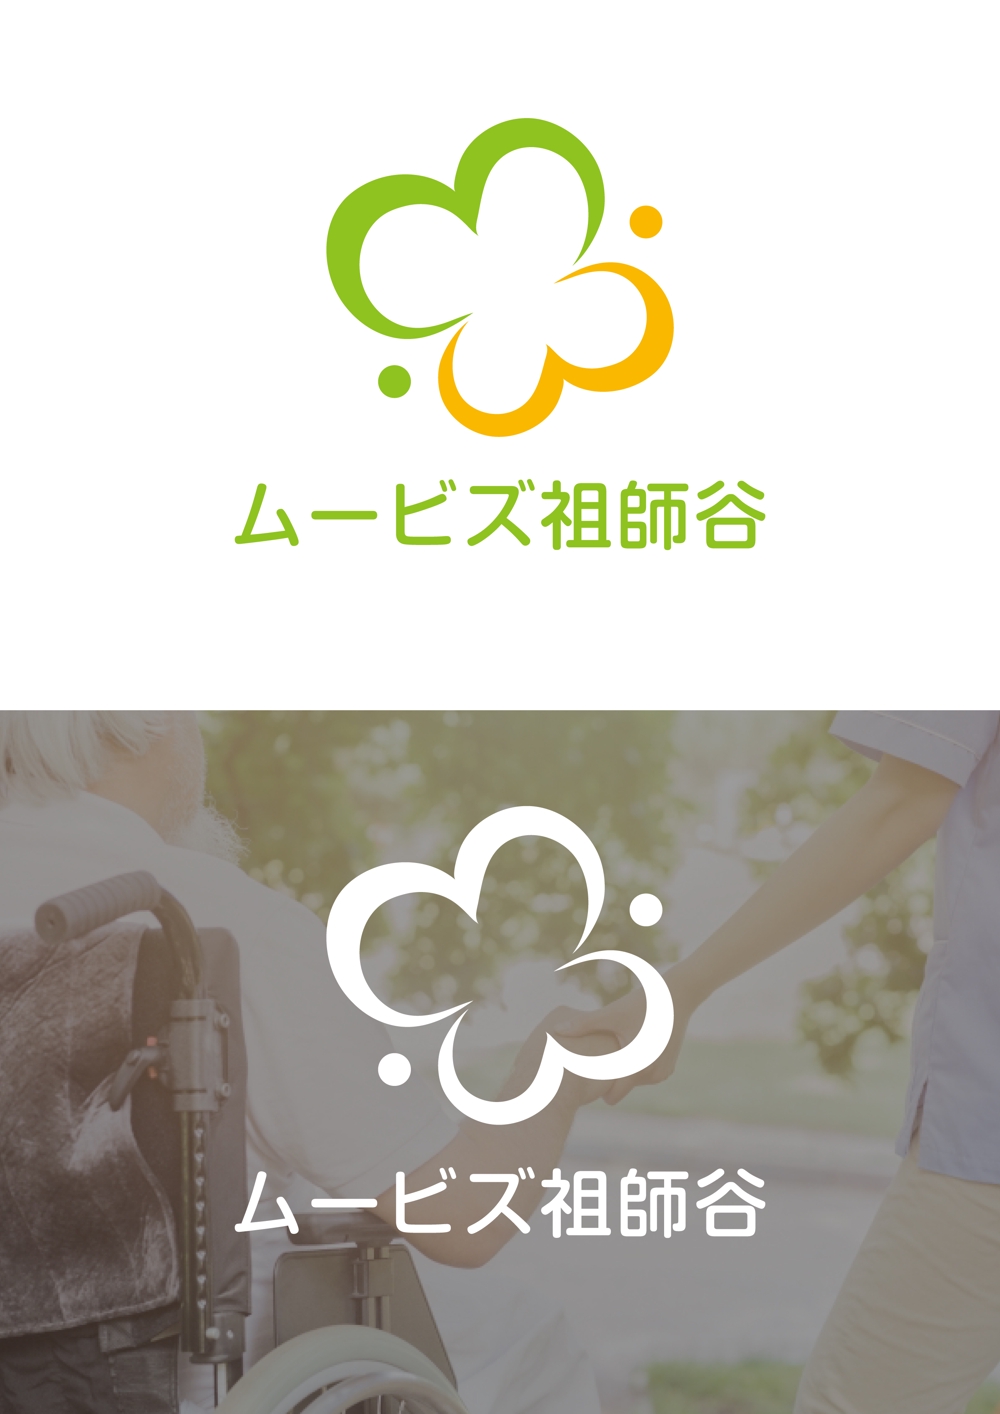 ムービズ祖師谷logo.jpg